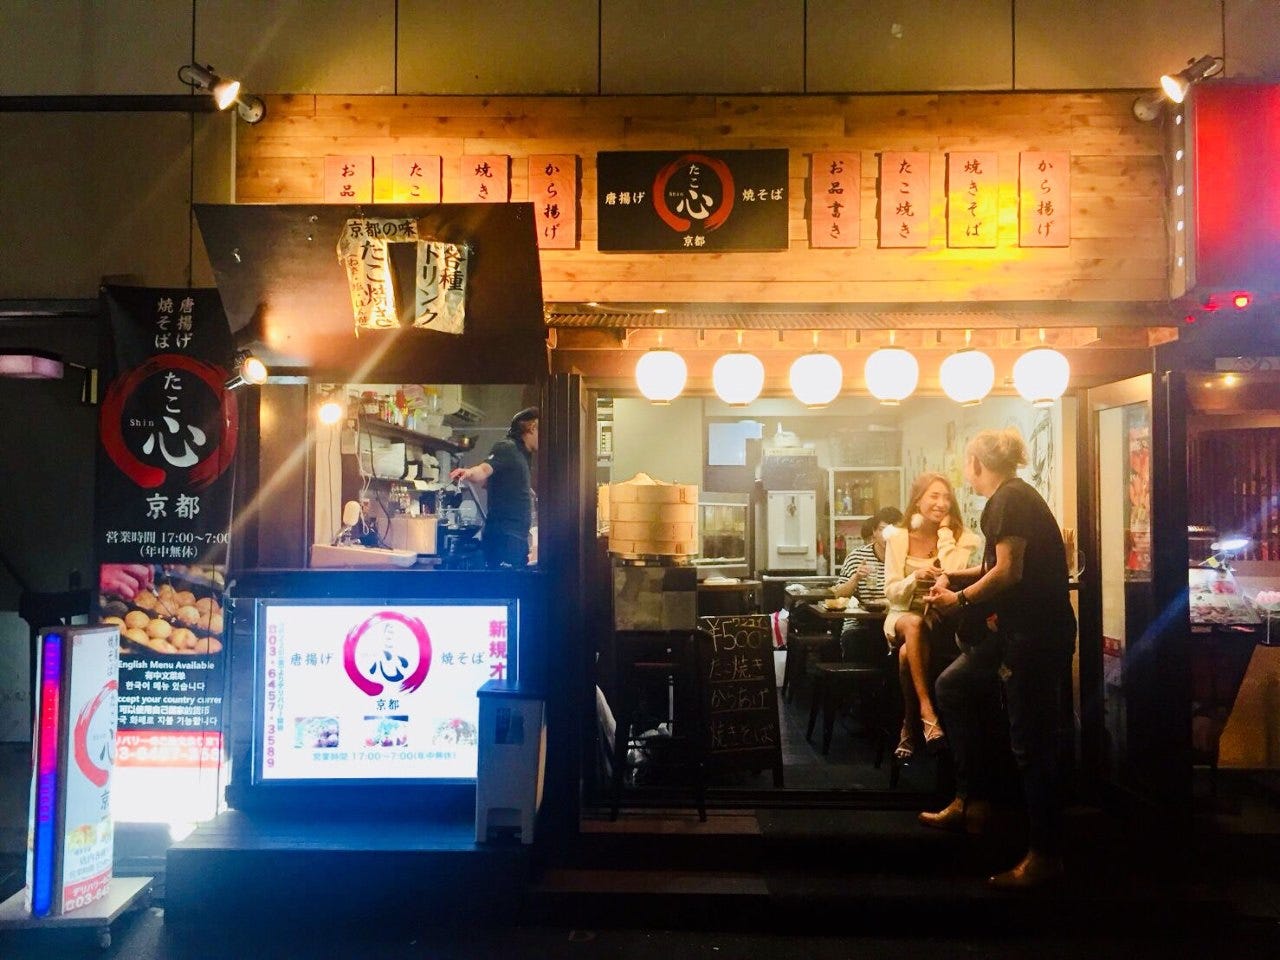 21年 最新グルメ 京風たこ焼き たこ心 新宿 レストラン カフェ 居酒屋のネット予約 東京版